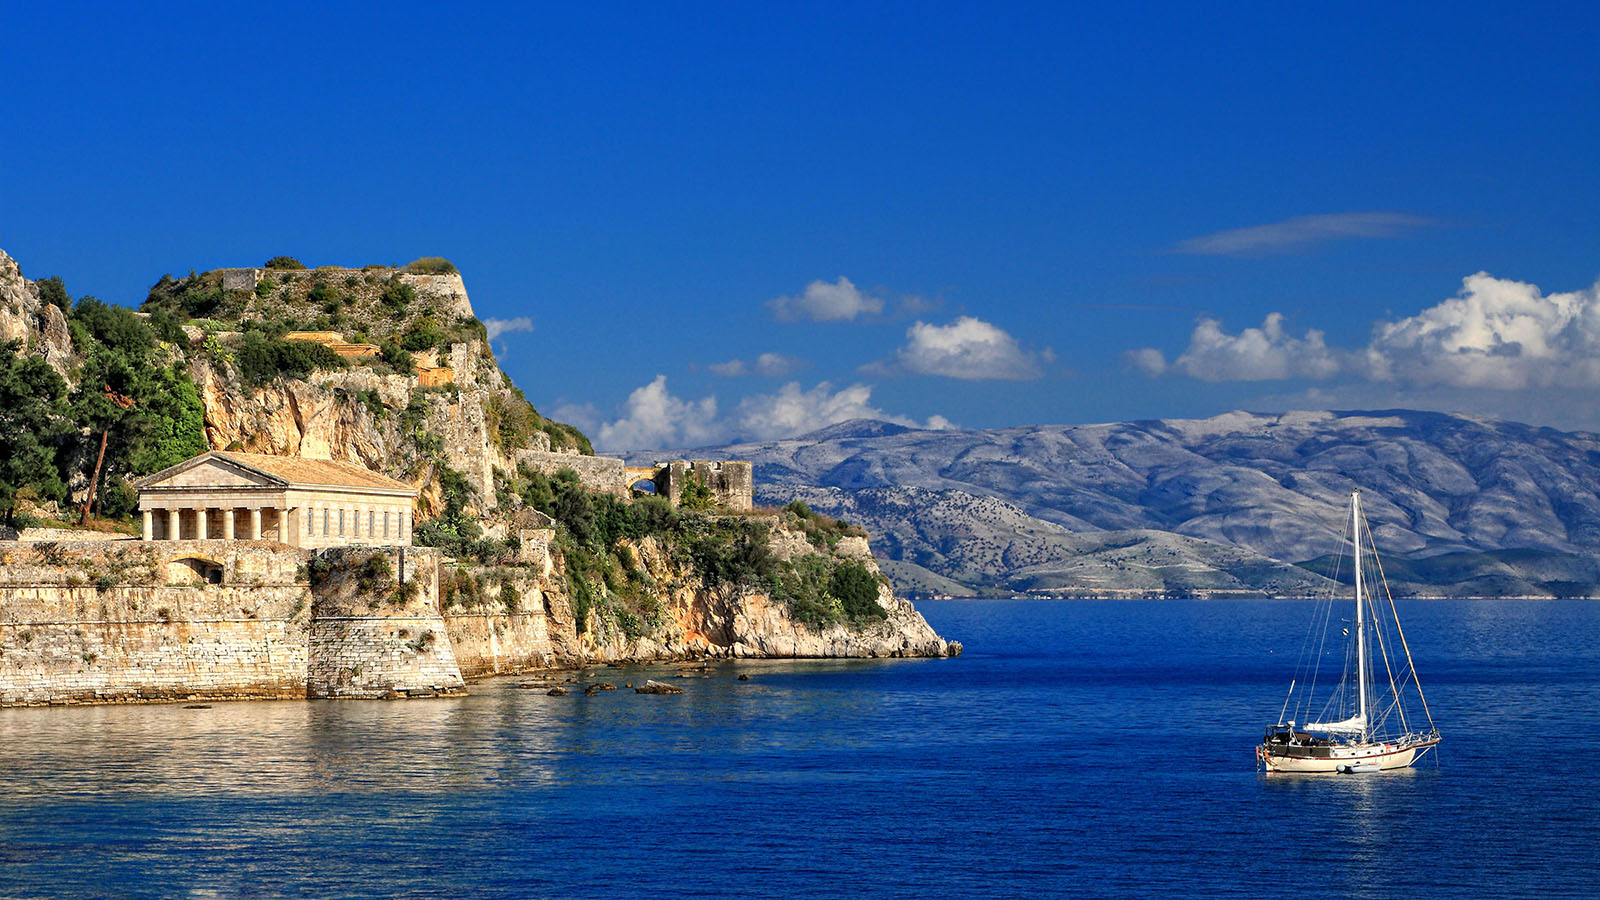 Греция+Хорватия+Италия - Туристический оператор APL Travel (АПЛ Тревел)